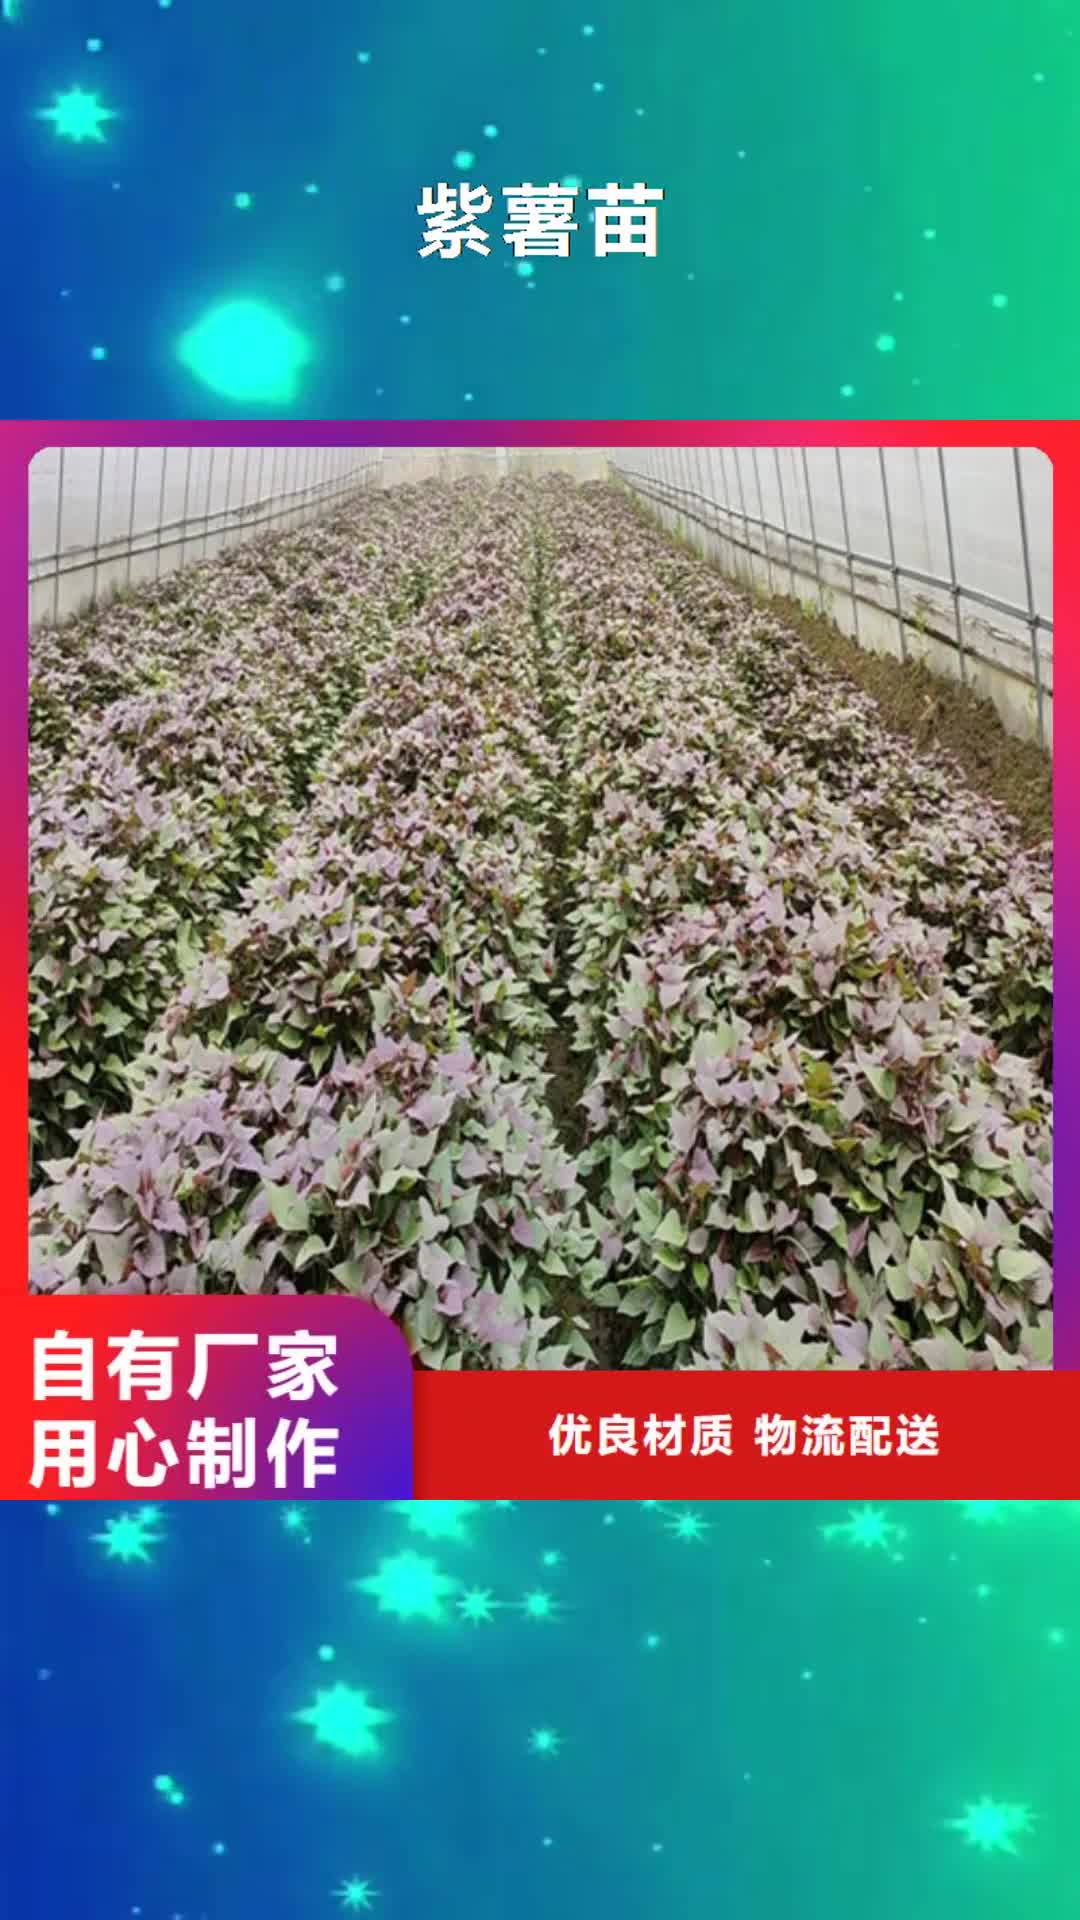 新疆【紫薯苗】,南瓜粉出厂严格质检